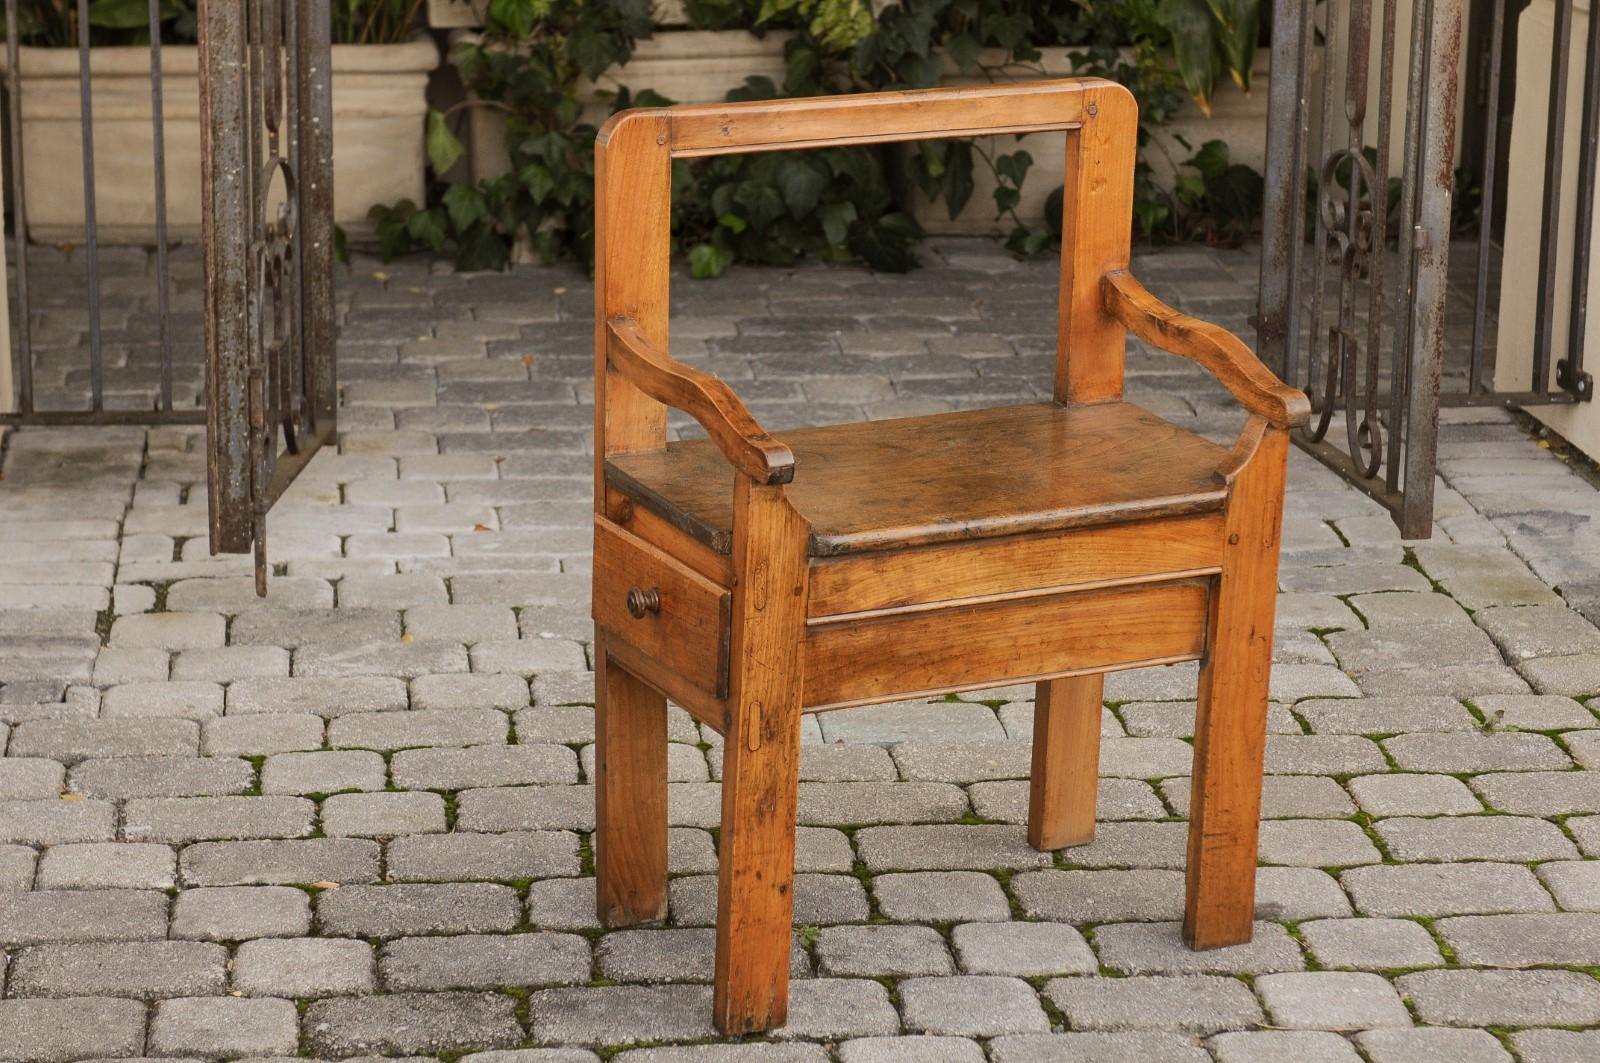 Rustikaler französischer Obstholzstuhl aus dem frühen 19. Jahrhundert mit offener Rückenlehne, einer seitlichen Schublade und geraden Beinen. Dieser charmante rustikale Stuhl entstand im zweiten Jahrzehnt des 19. Jahrhunderts während der